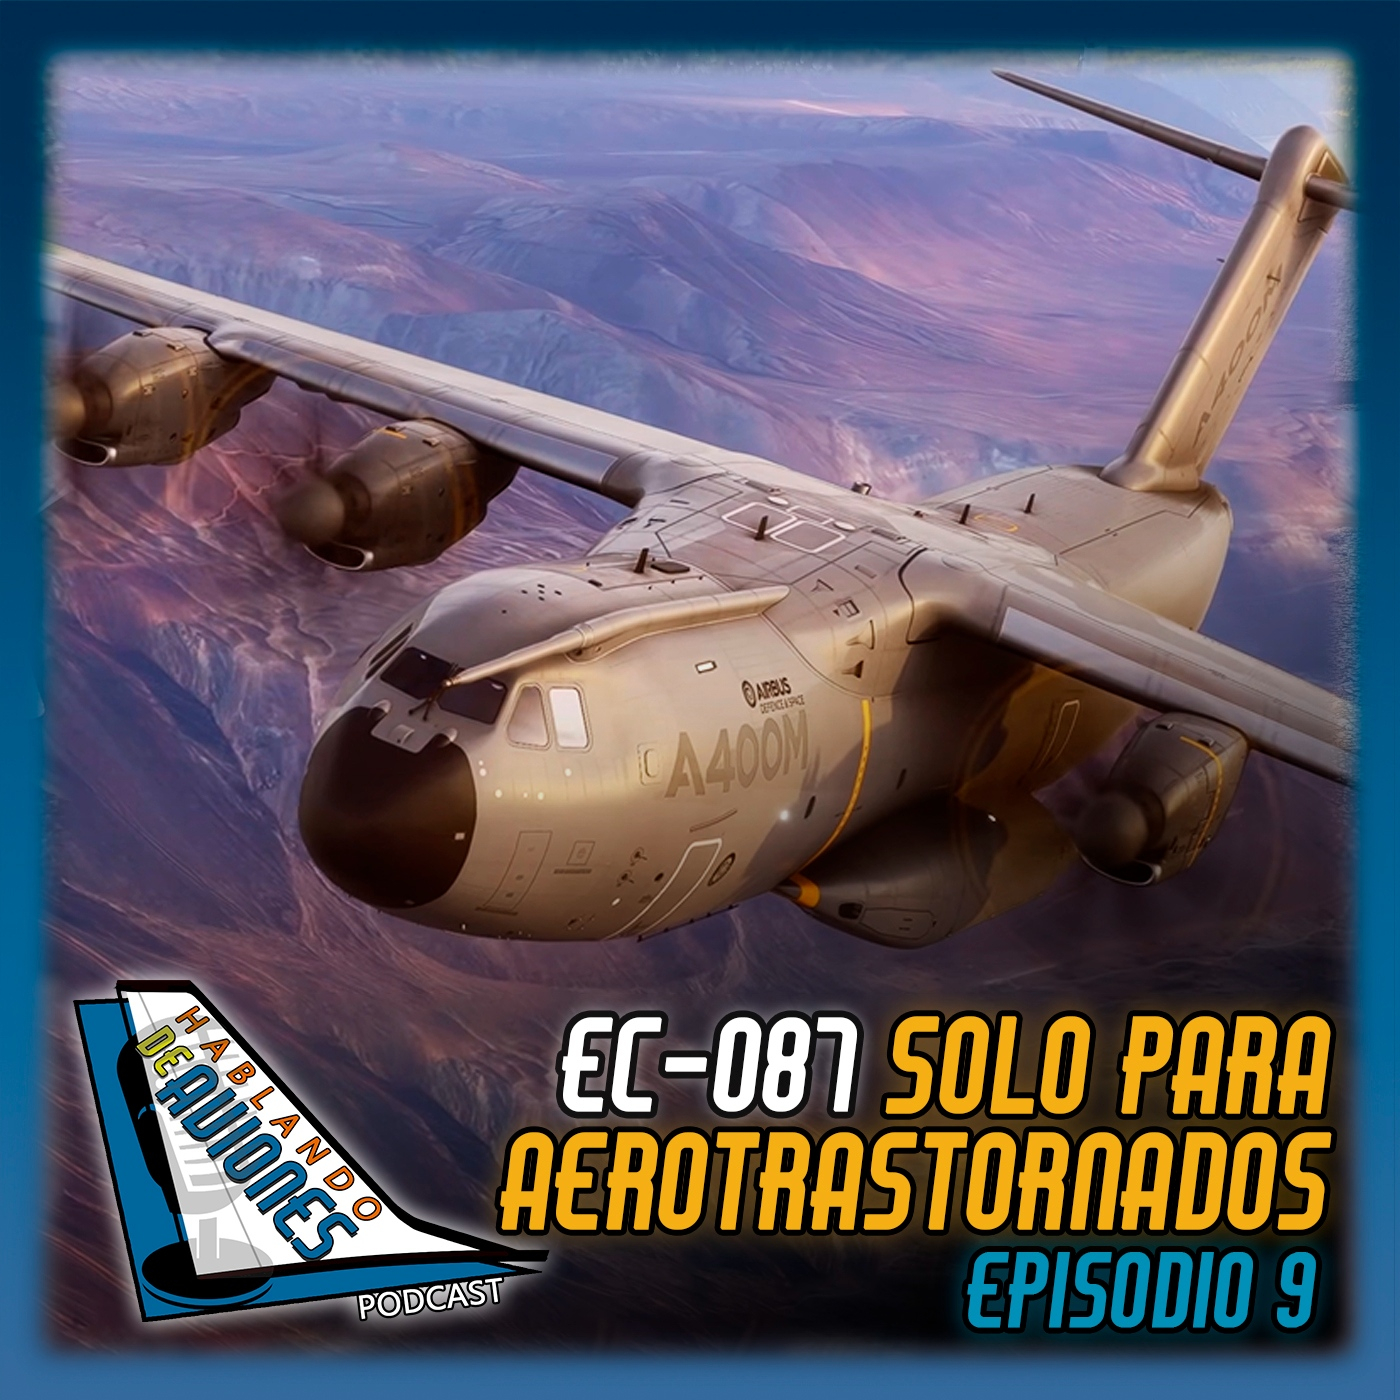 EC-087. Solo para aerotrastornados. Episodio 9